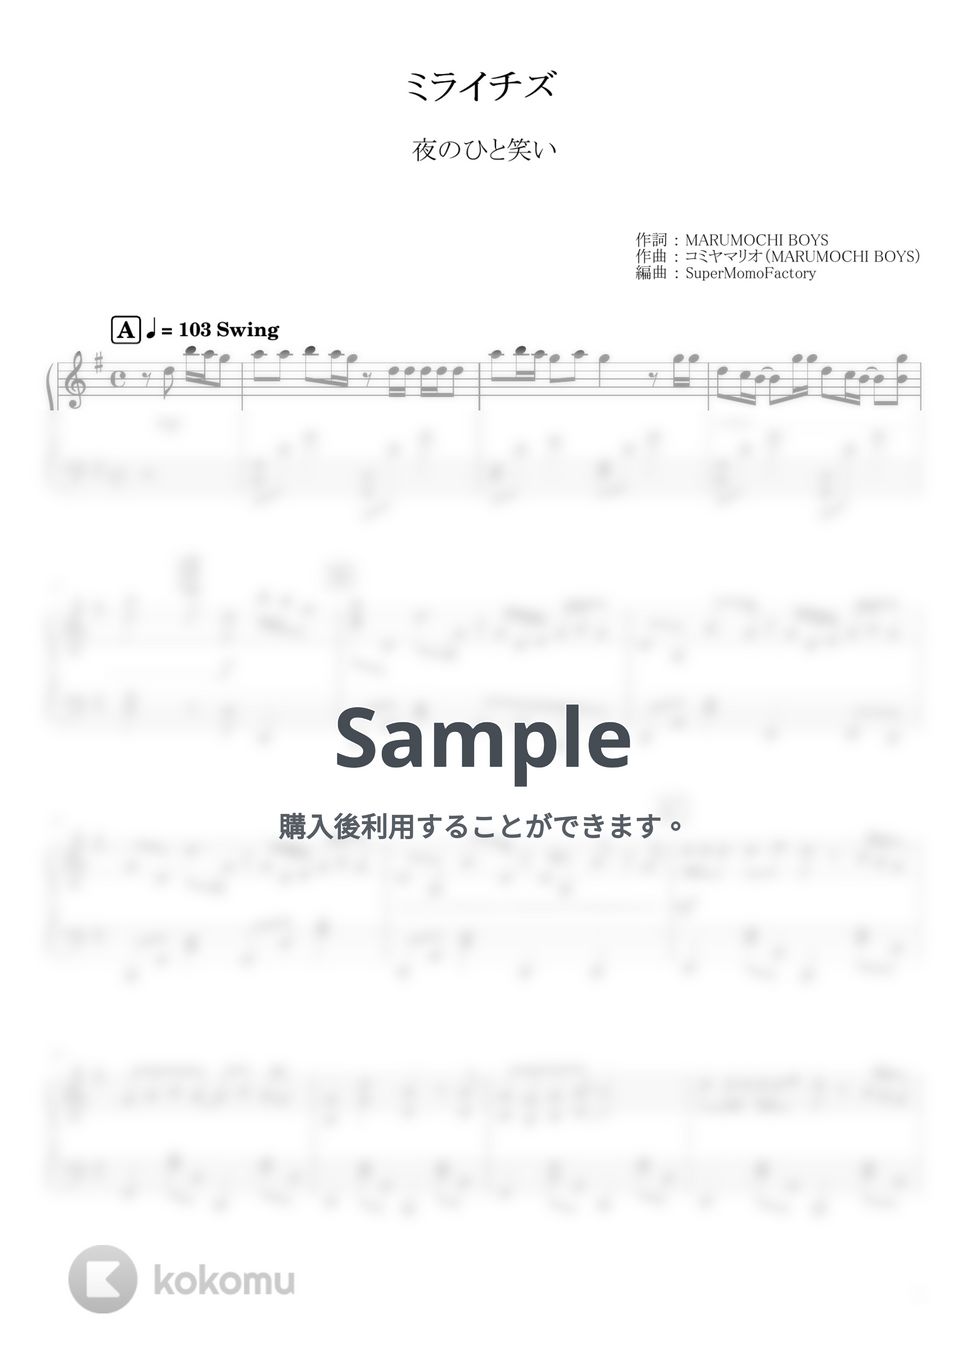 夜のひと笑い - ミライチズ (ピアノソロ / 中級) by SuperMomoFactory